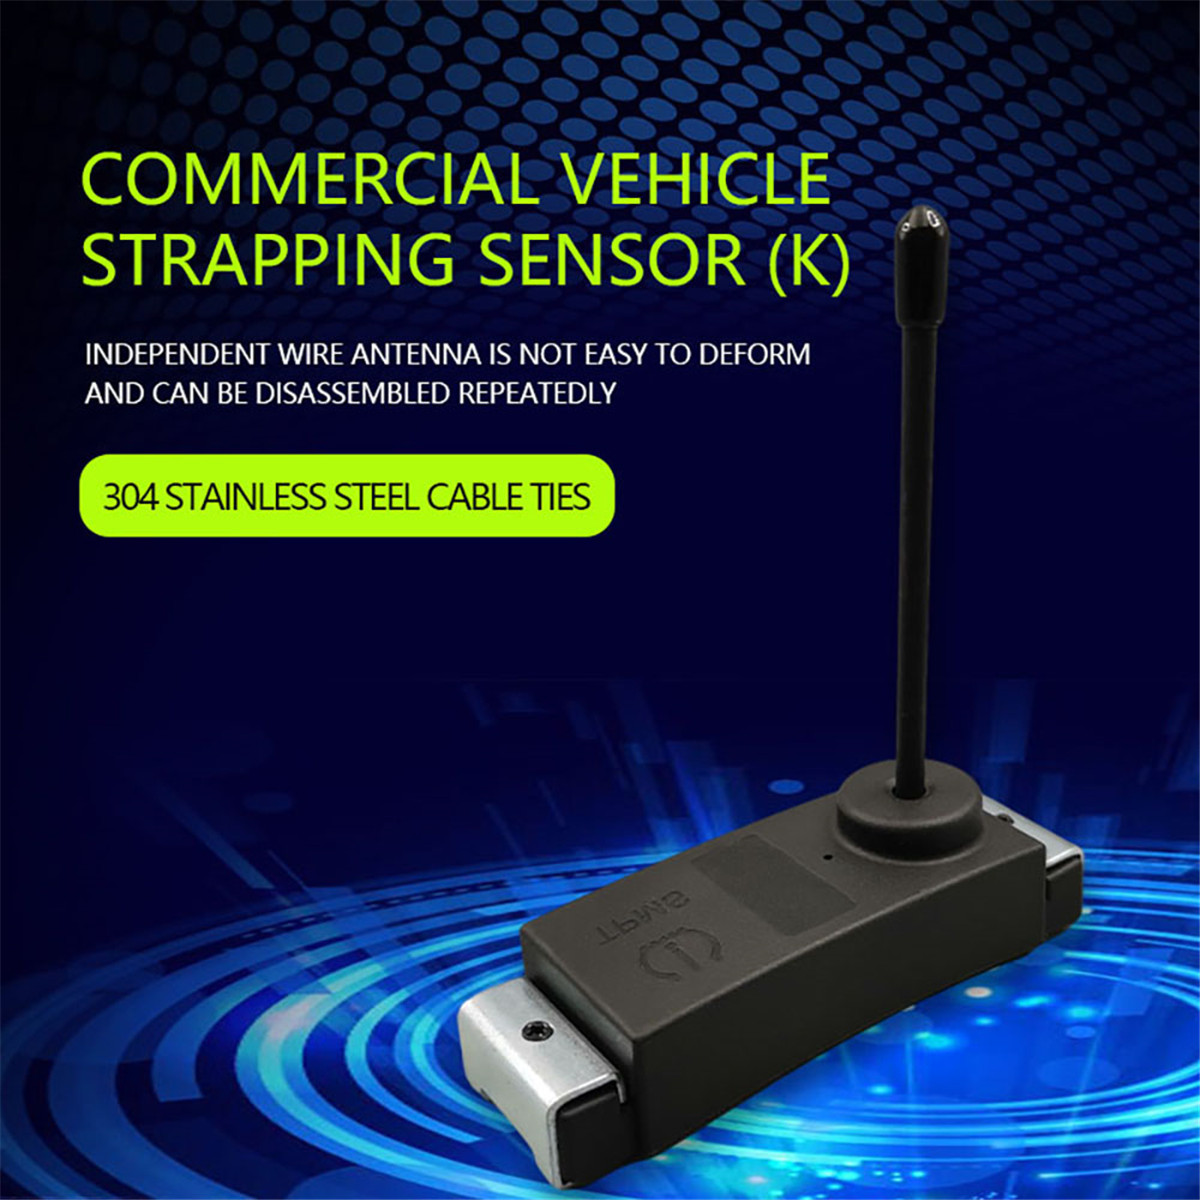 Senzor páskování užitkových vozidel01 (9)